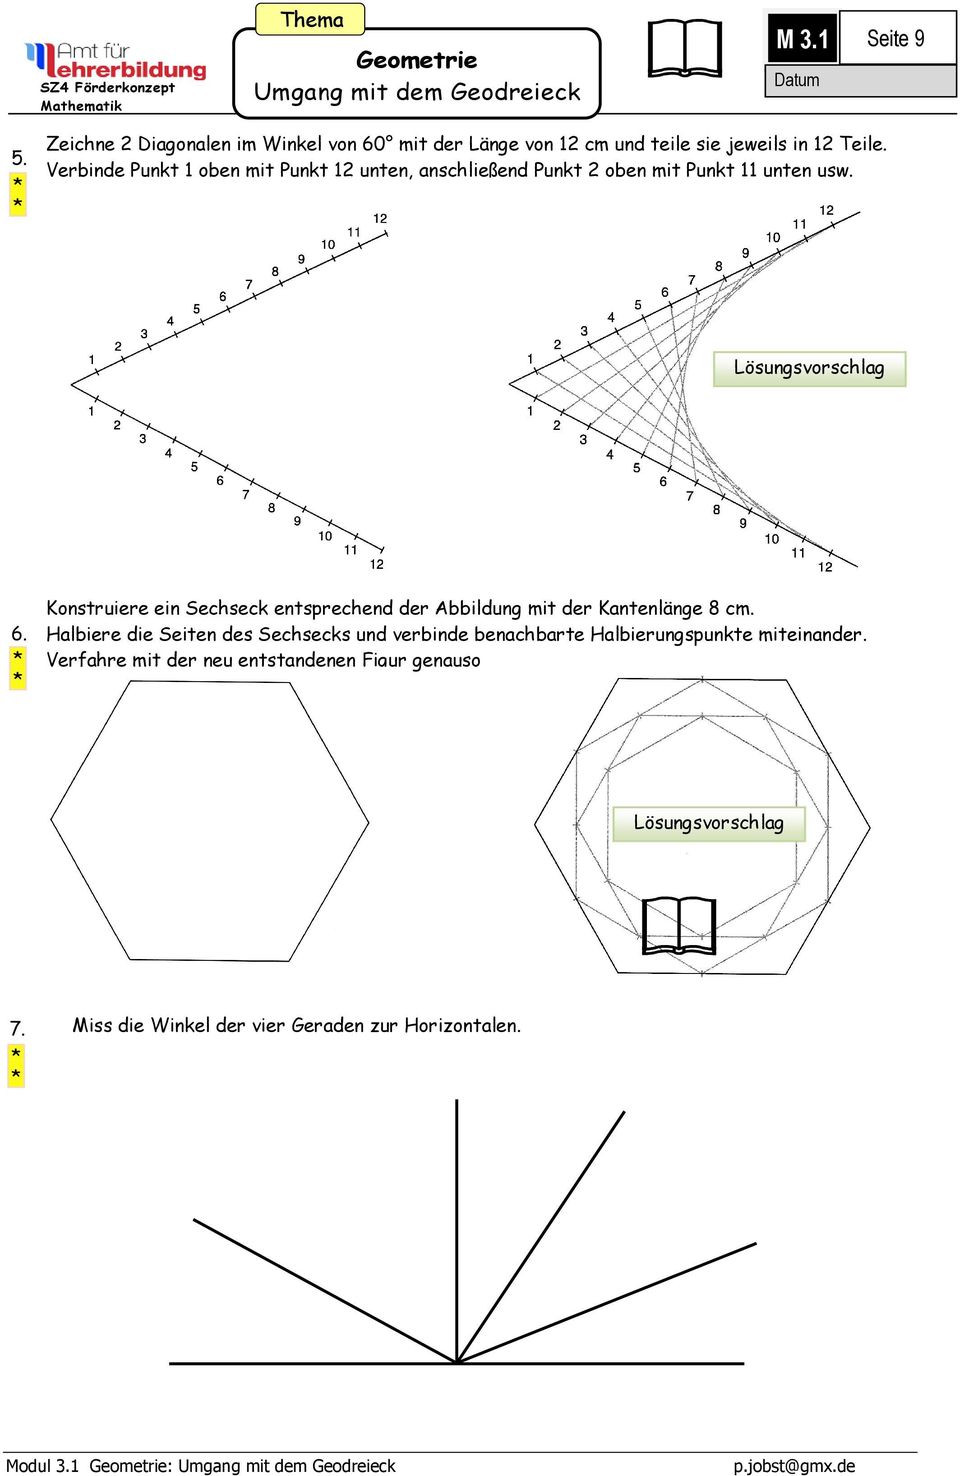 Konstruiere ein Sechseck entsprechend der Abbildung mit der Kantenlänge 8 cm.